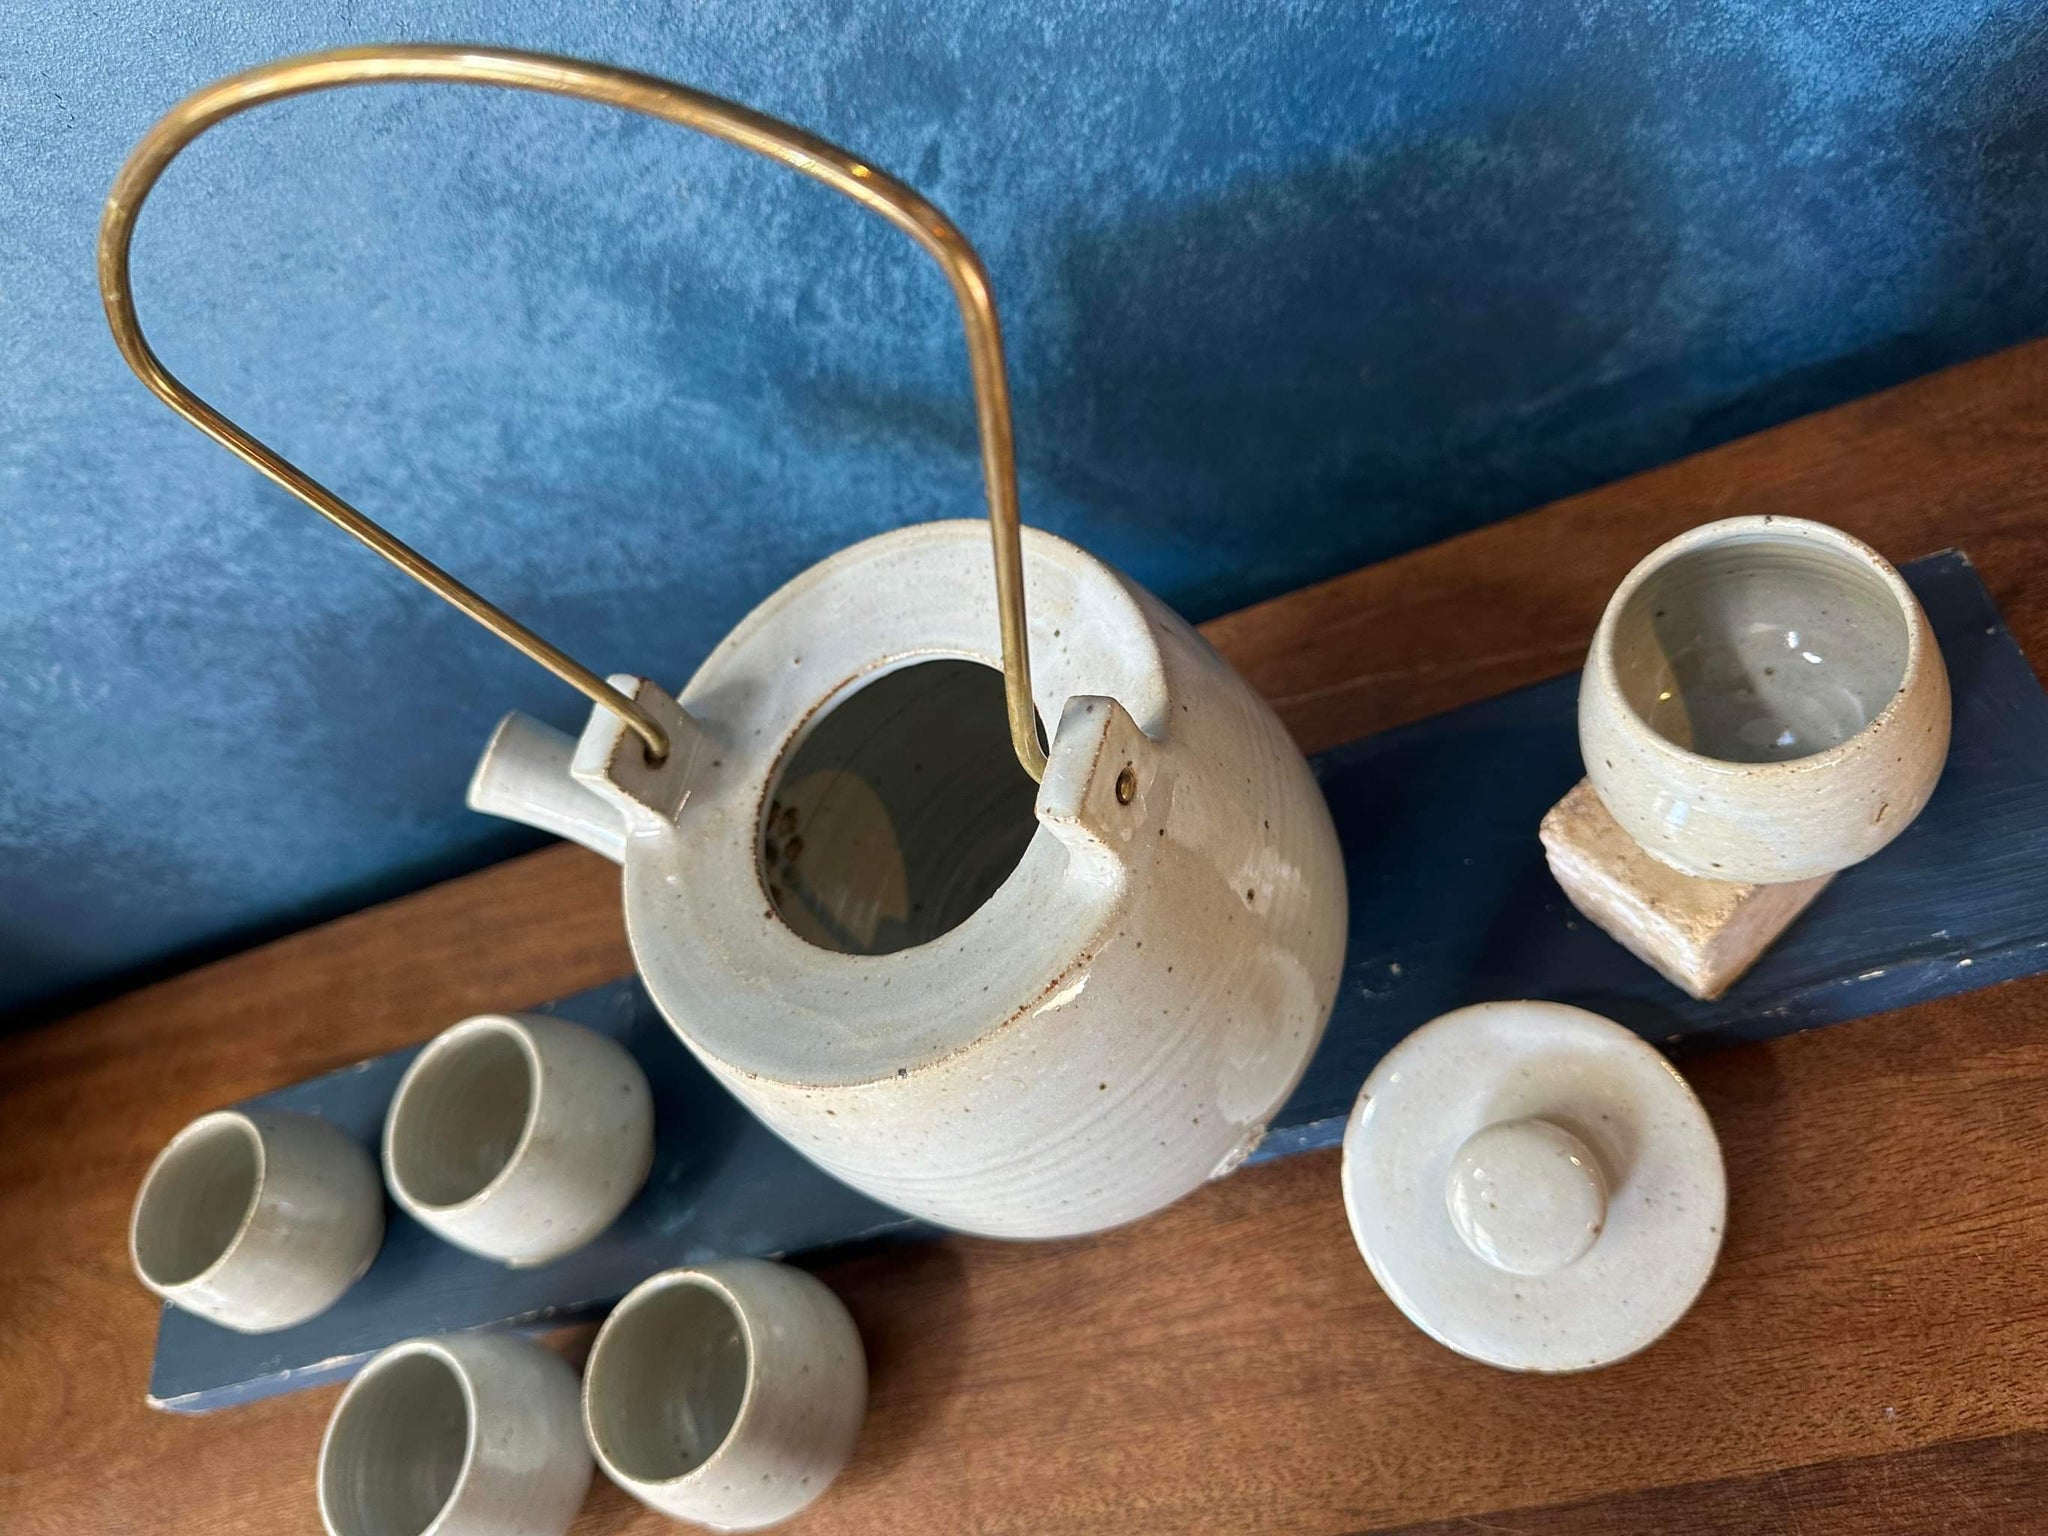 Ivory Tea Set